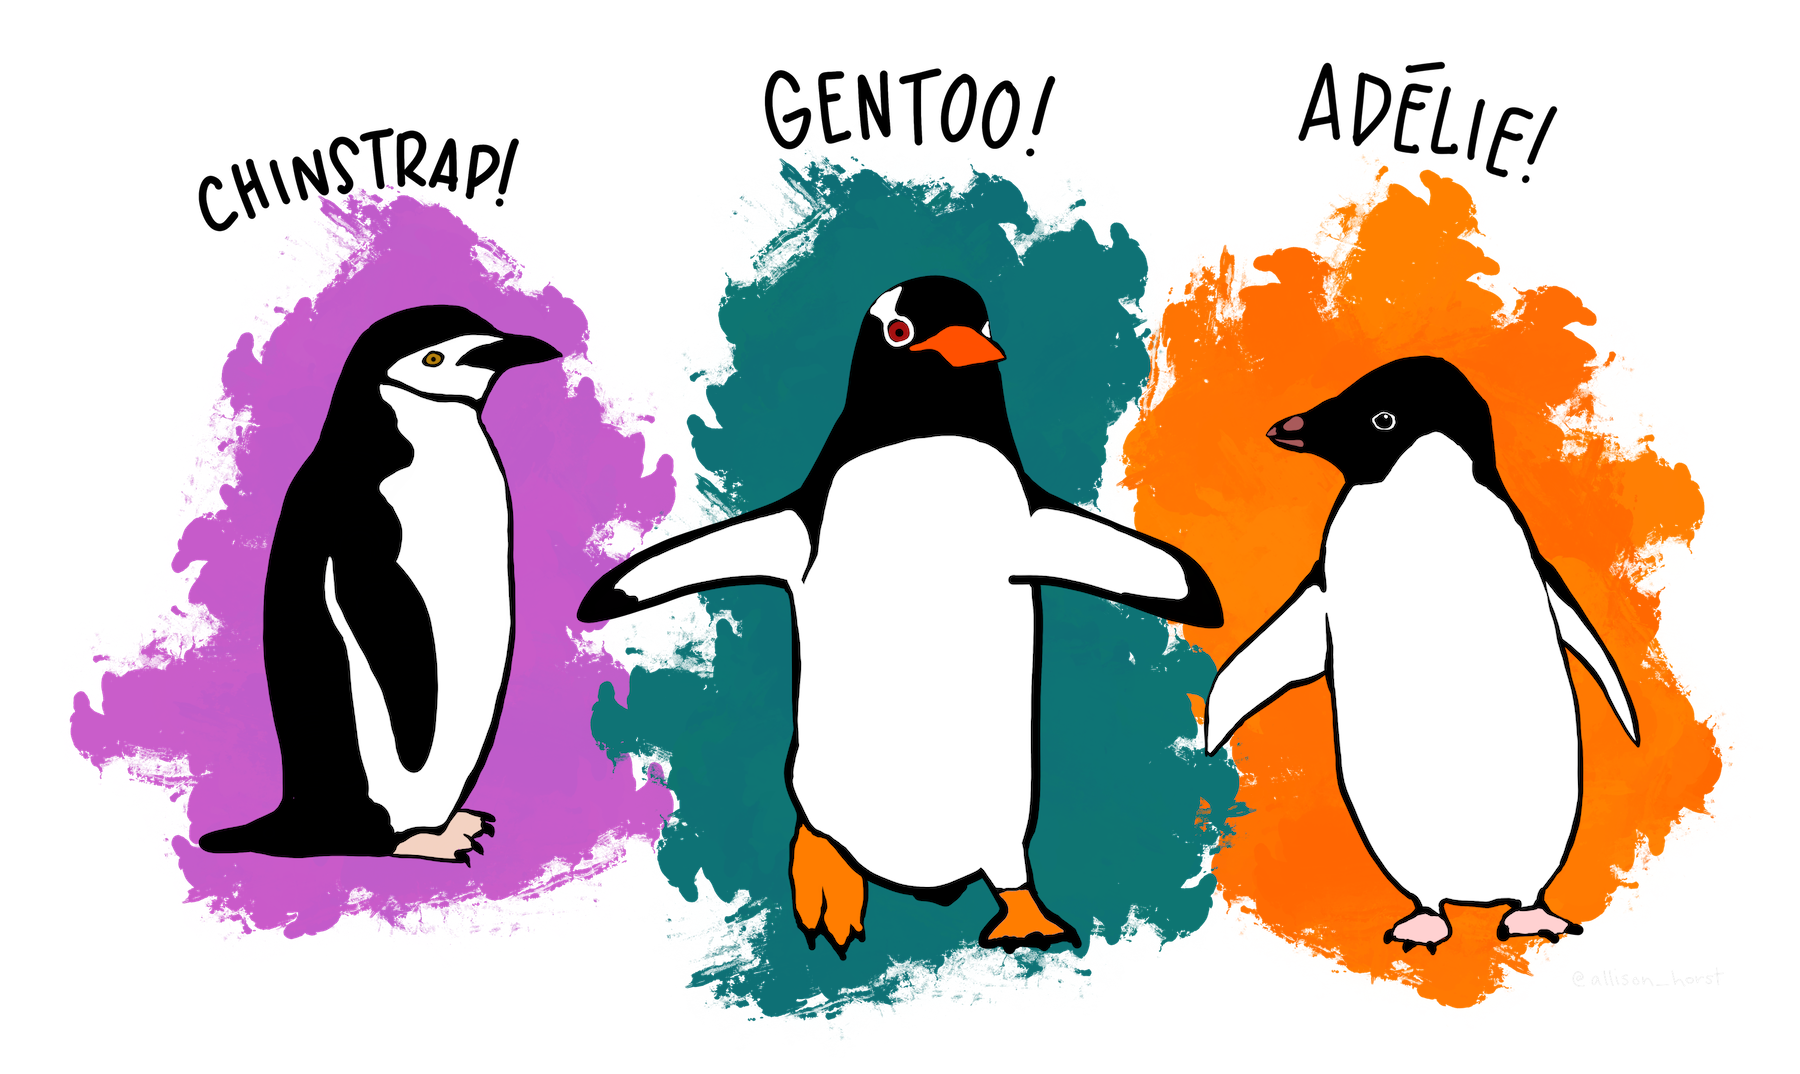 Illustration of Chinstrap, Gentoo, and Adélie penguins